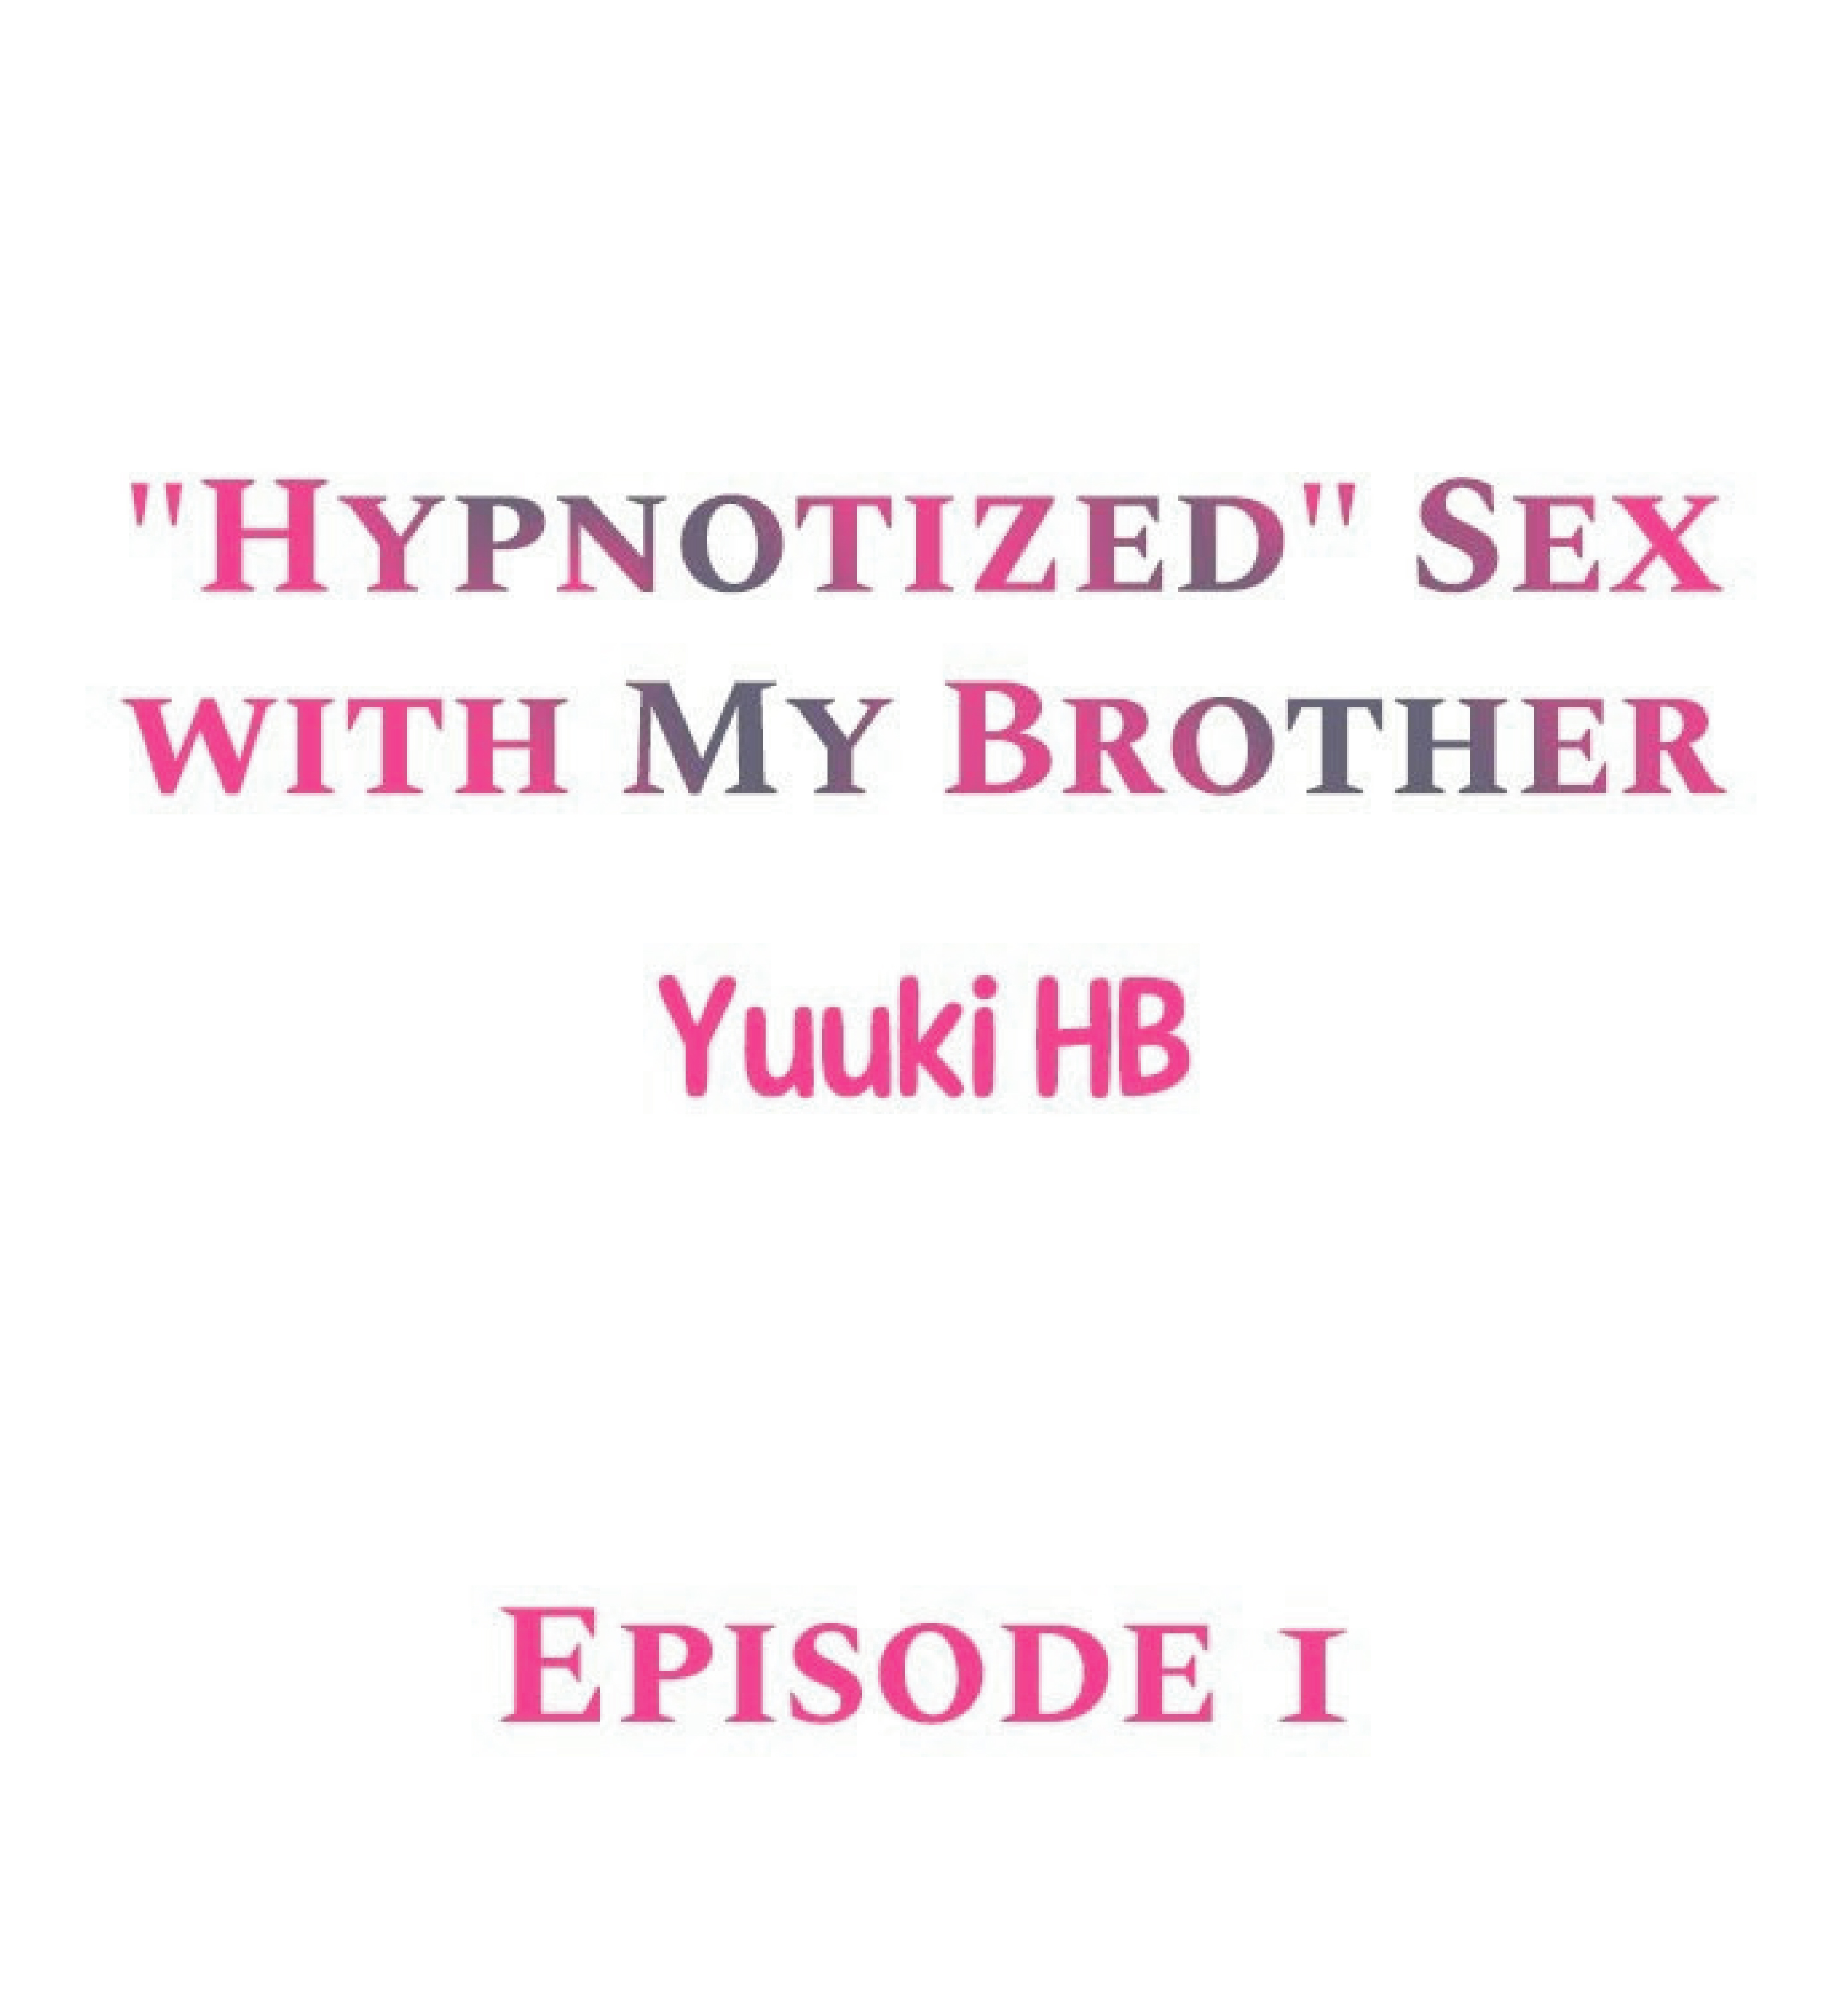 อ่านการ์ตูน “Hypnotized” Sex With My Brother 1 ภาพที่ 1